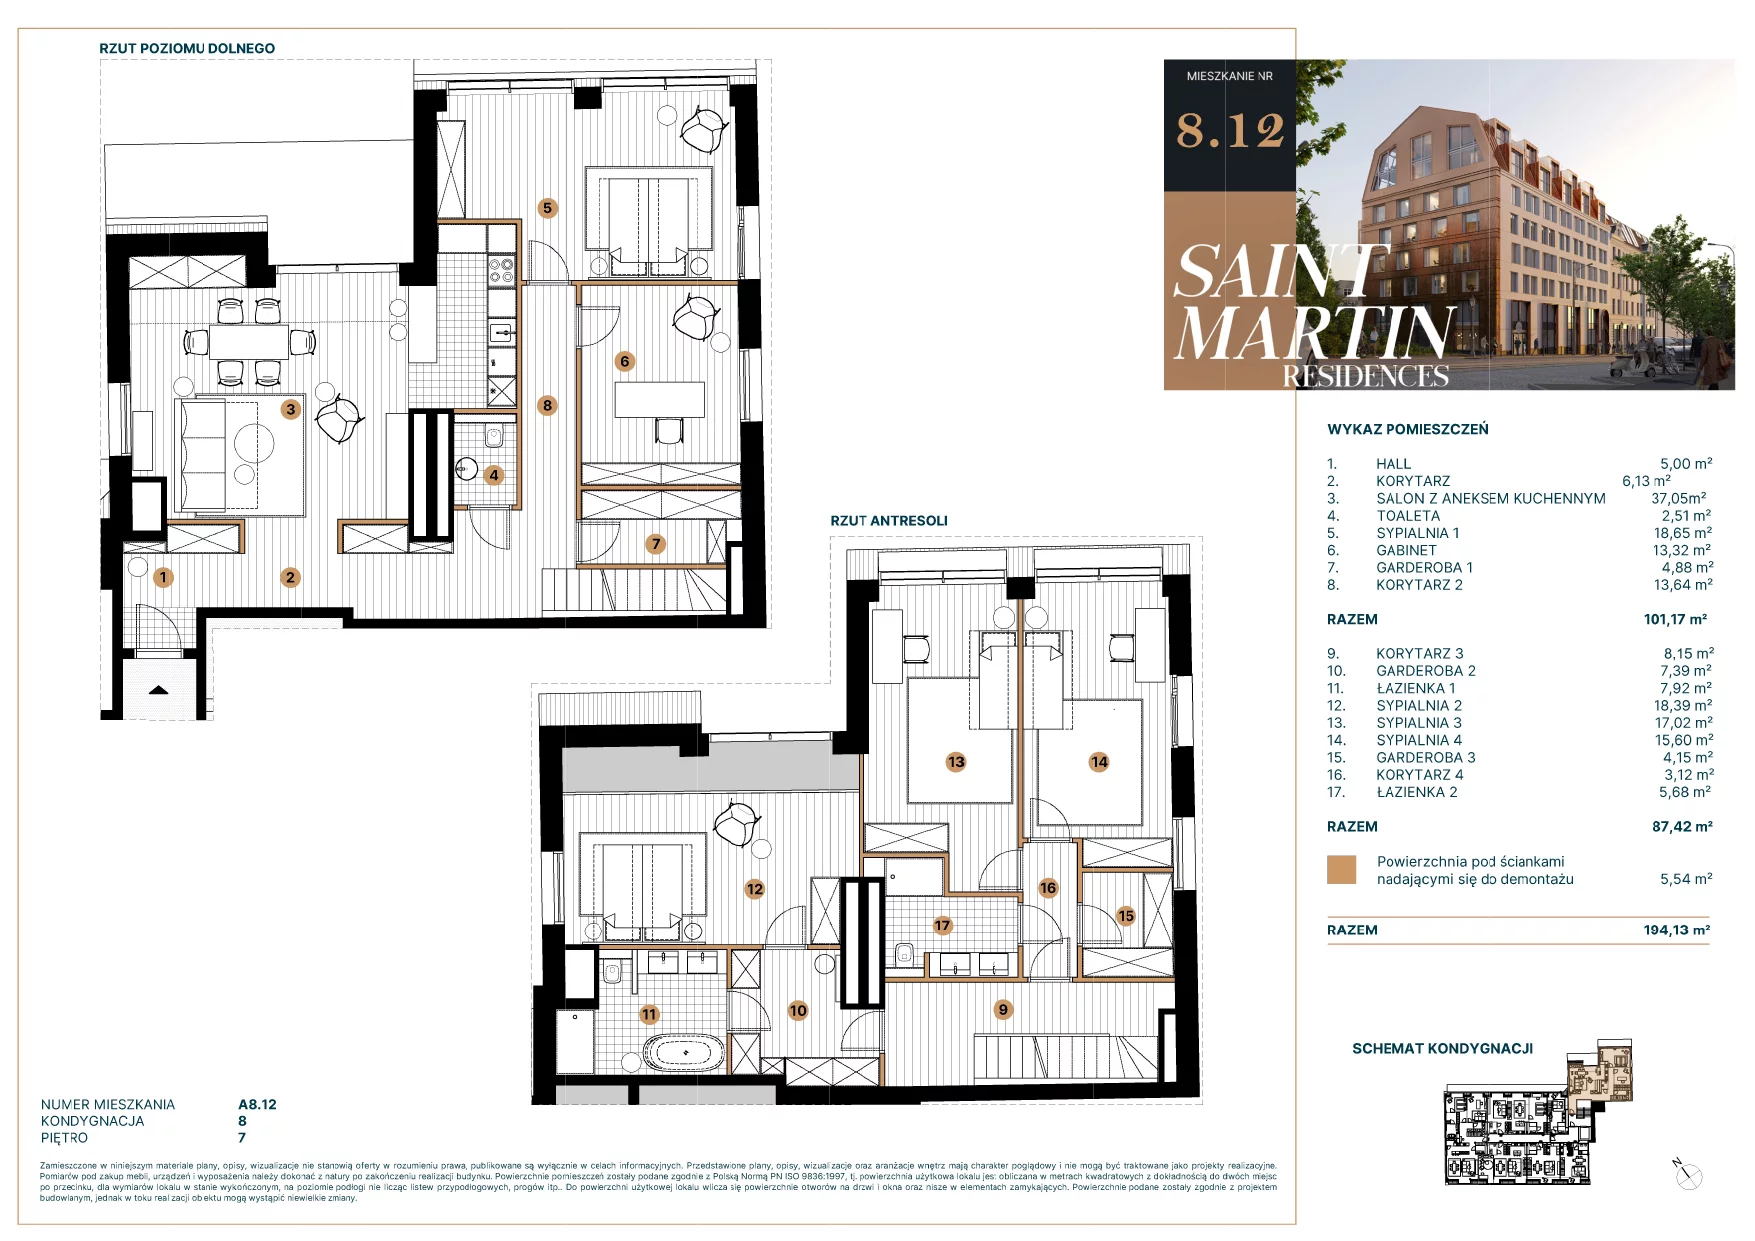 Mieszkanie 196,58 m², piętro 7, oferta nr A8.12, Saint Martin Residences II, Poznań, Stare Miasto, Stare Miasto, ul. Podgórna 7